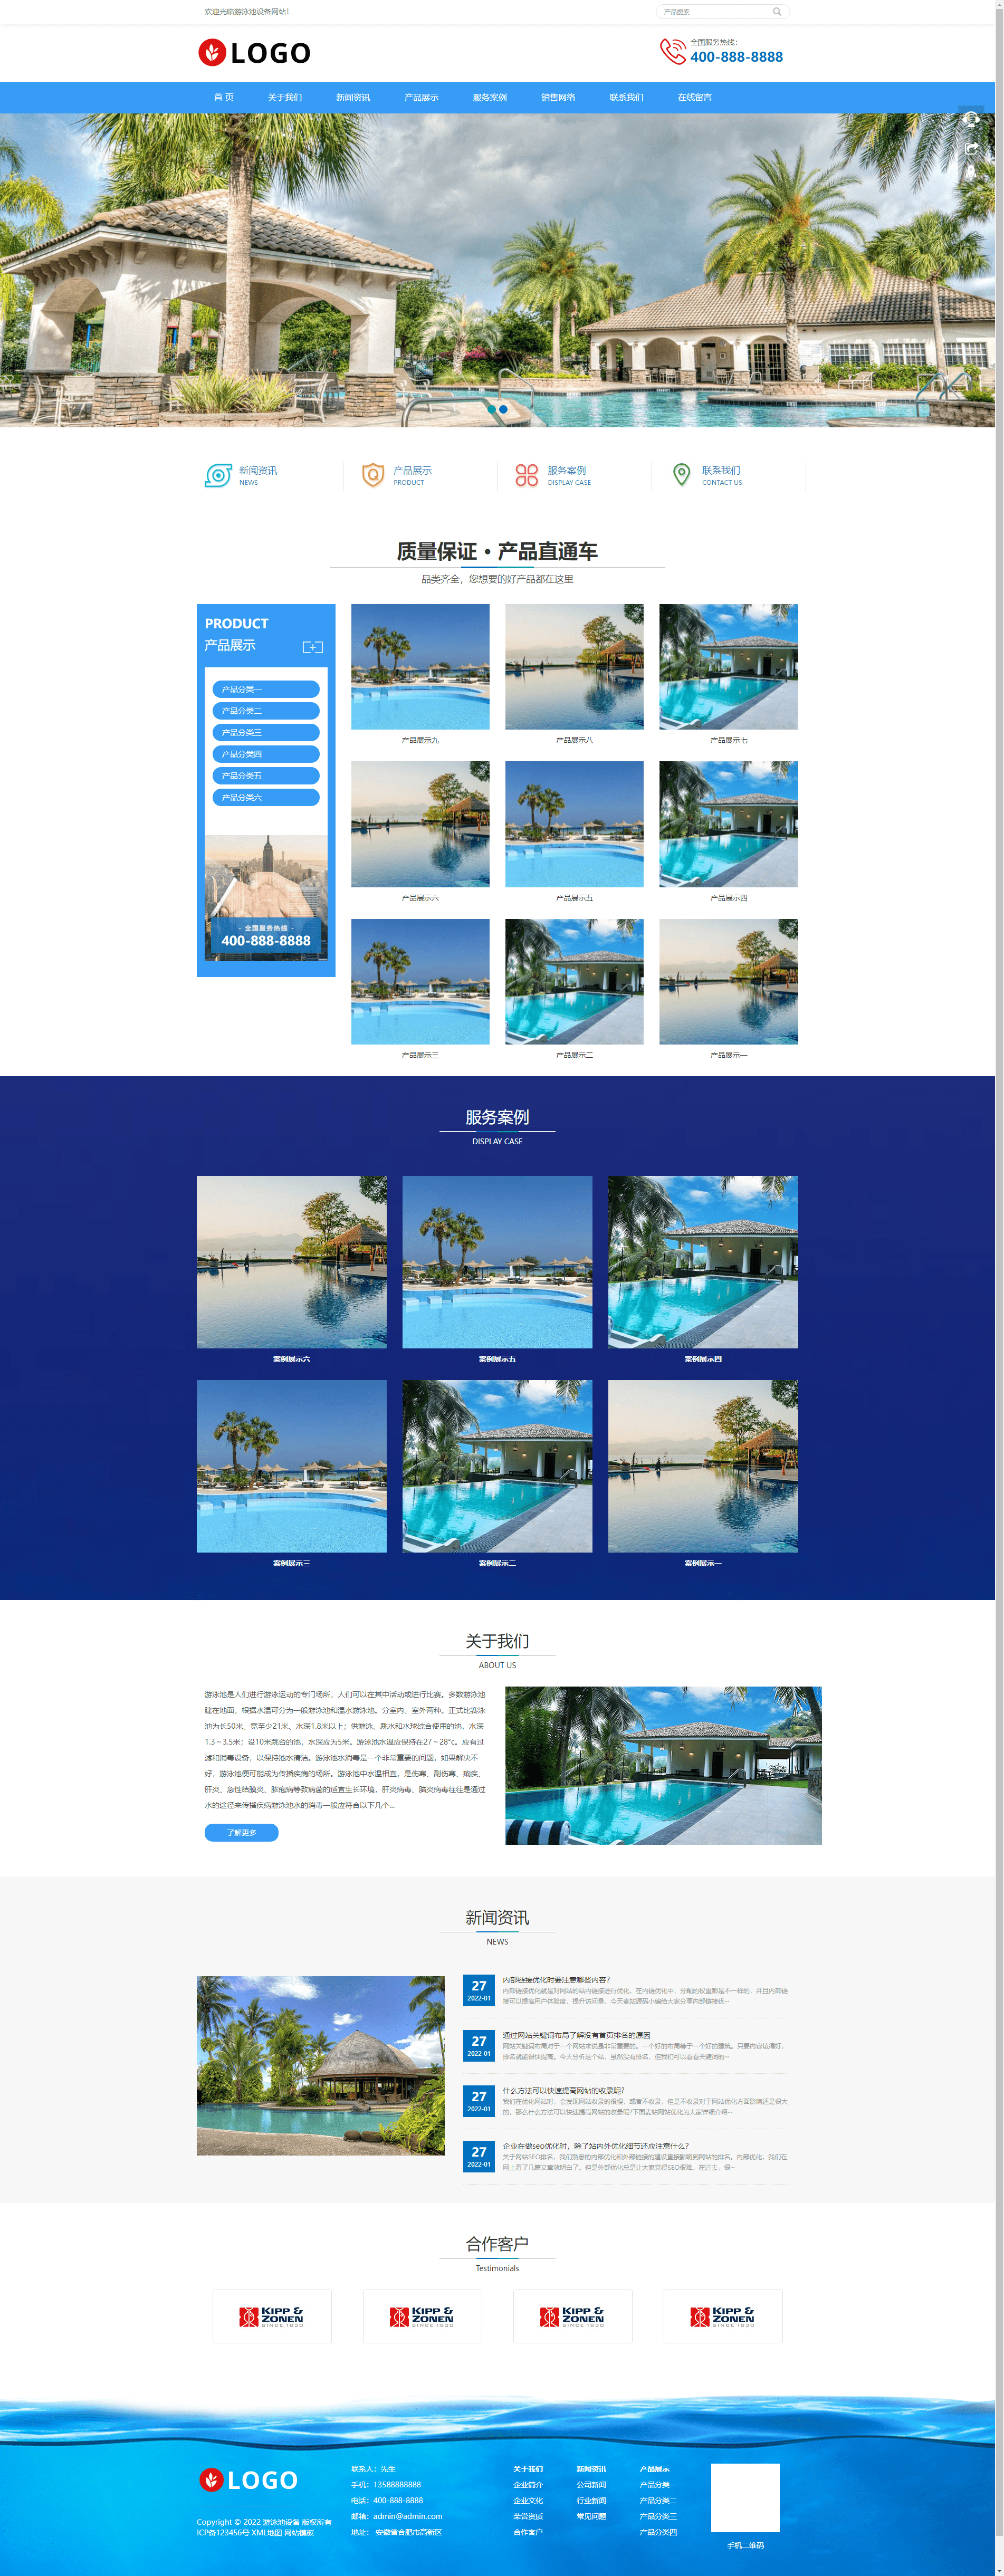 Pbootcms响应式旅游度假泳池设备网站模板